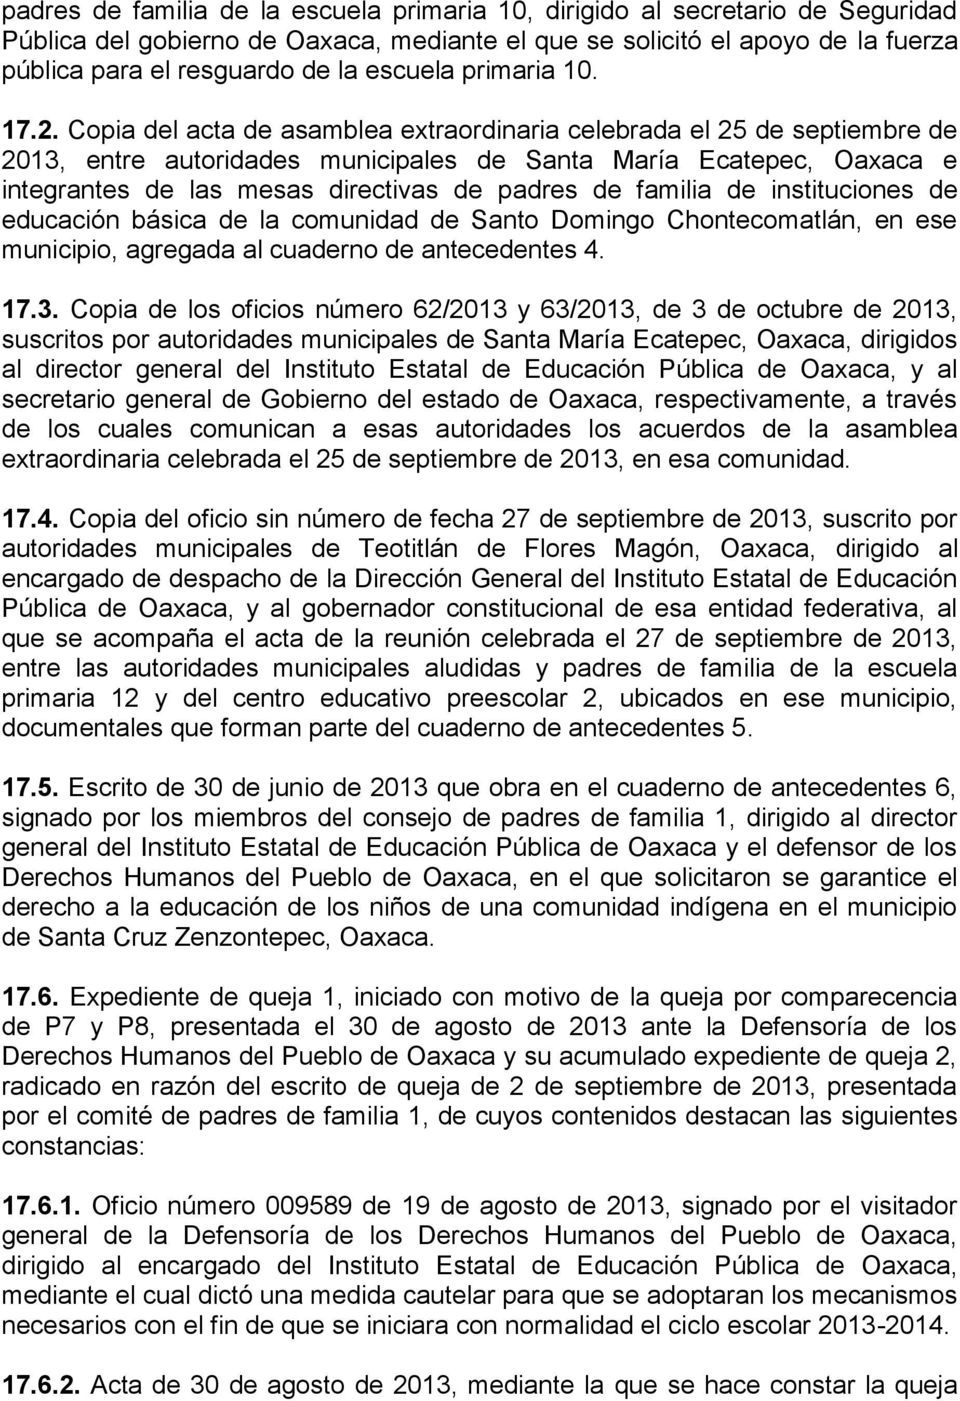 Copia del acta de asamblea extraordinaria celebrada el 25 de septiembre de 2013, entre autoridades municipales de Santa María Ecatepec, Oaxaca e integrantes de las mesas directivas de padres de